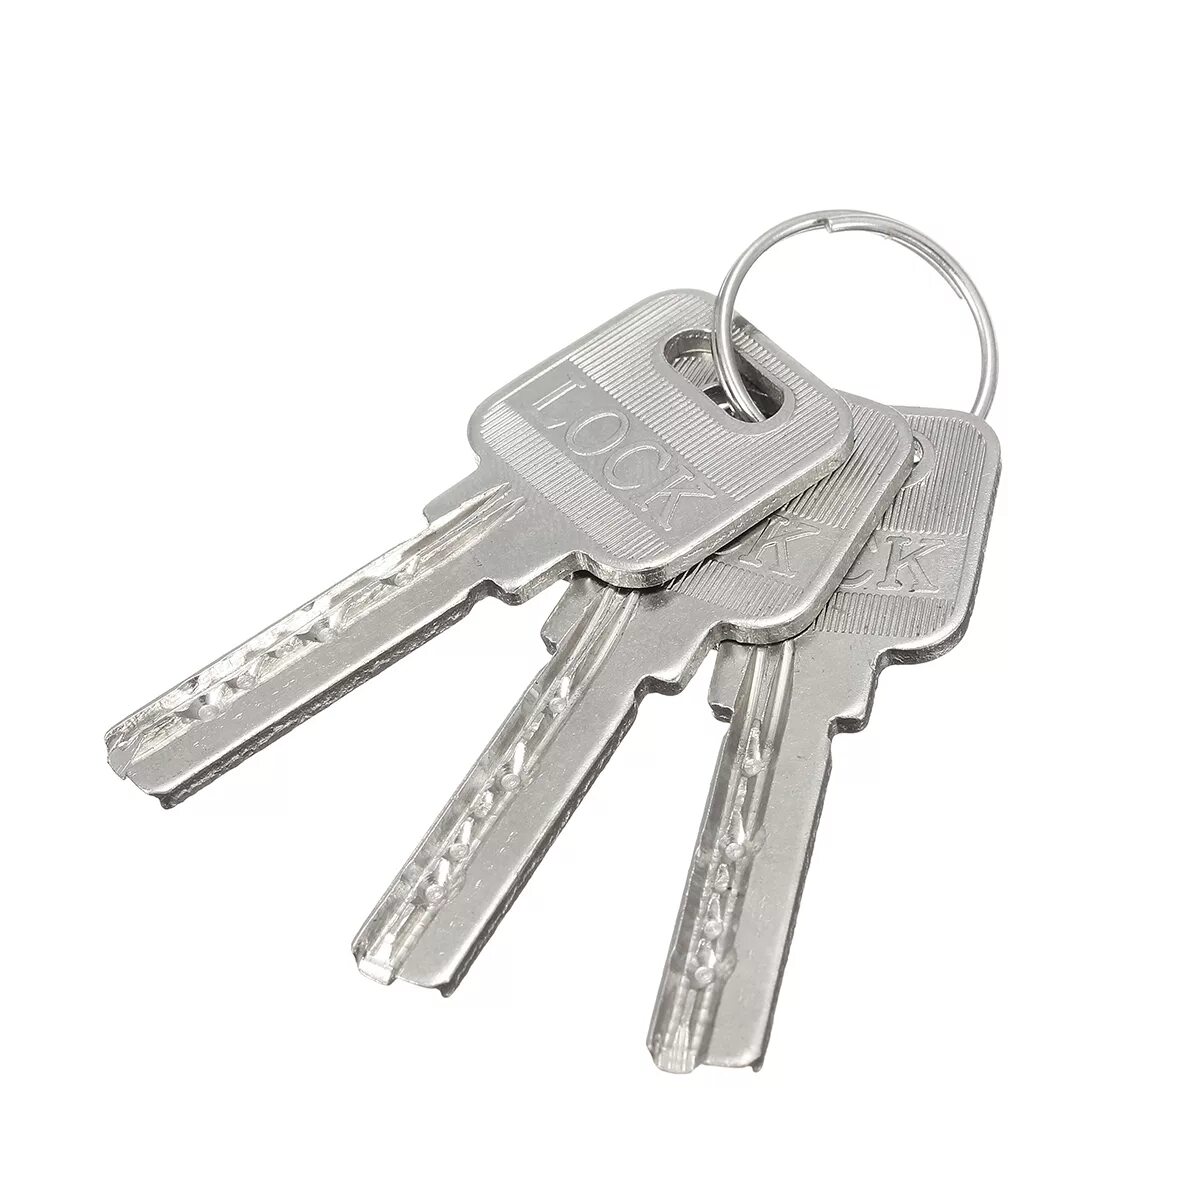 Ключ образец помещение. Ключ ul-4 замок дверной. Ключ 21417 для замка. Ключи и замки Doorlock. Ключи для замков (- \ для замка Shanghai Lianjiang Electric ms739-1).